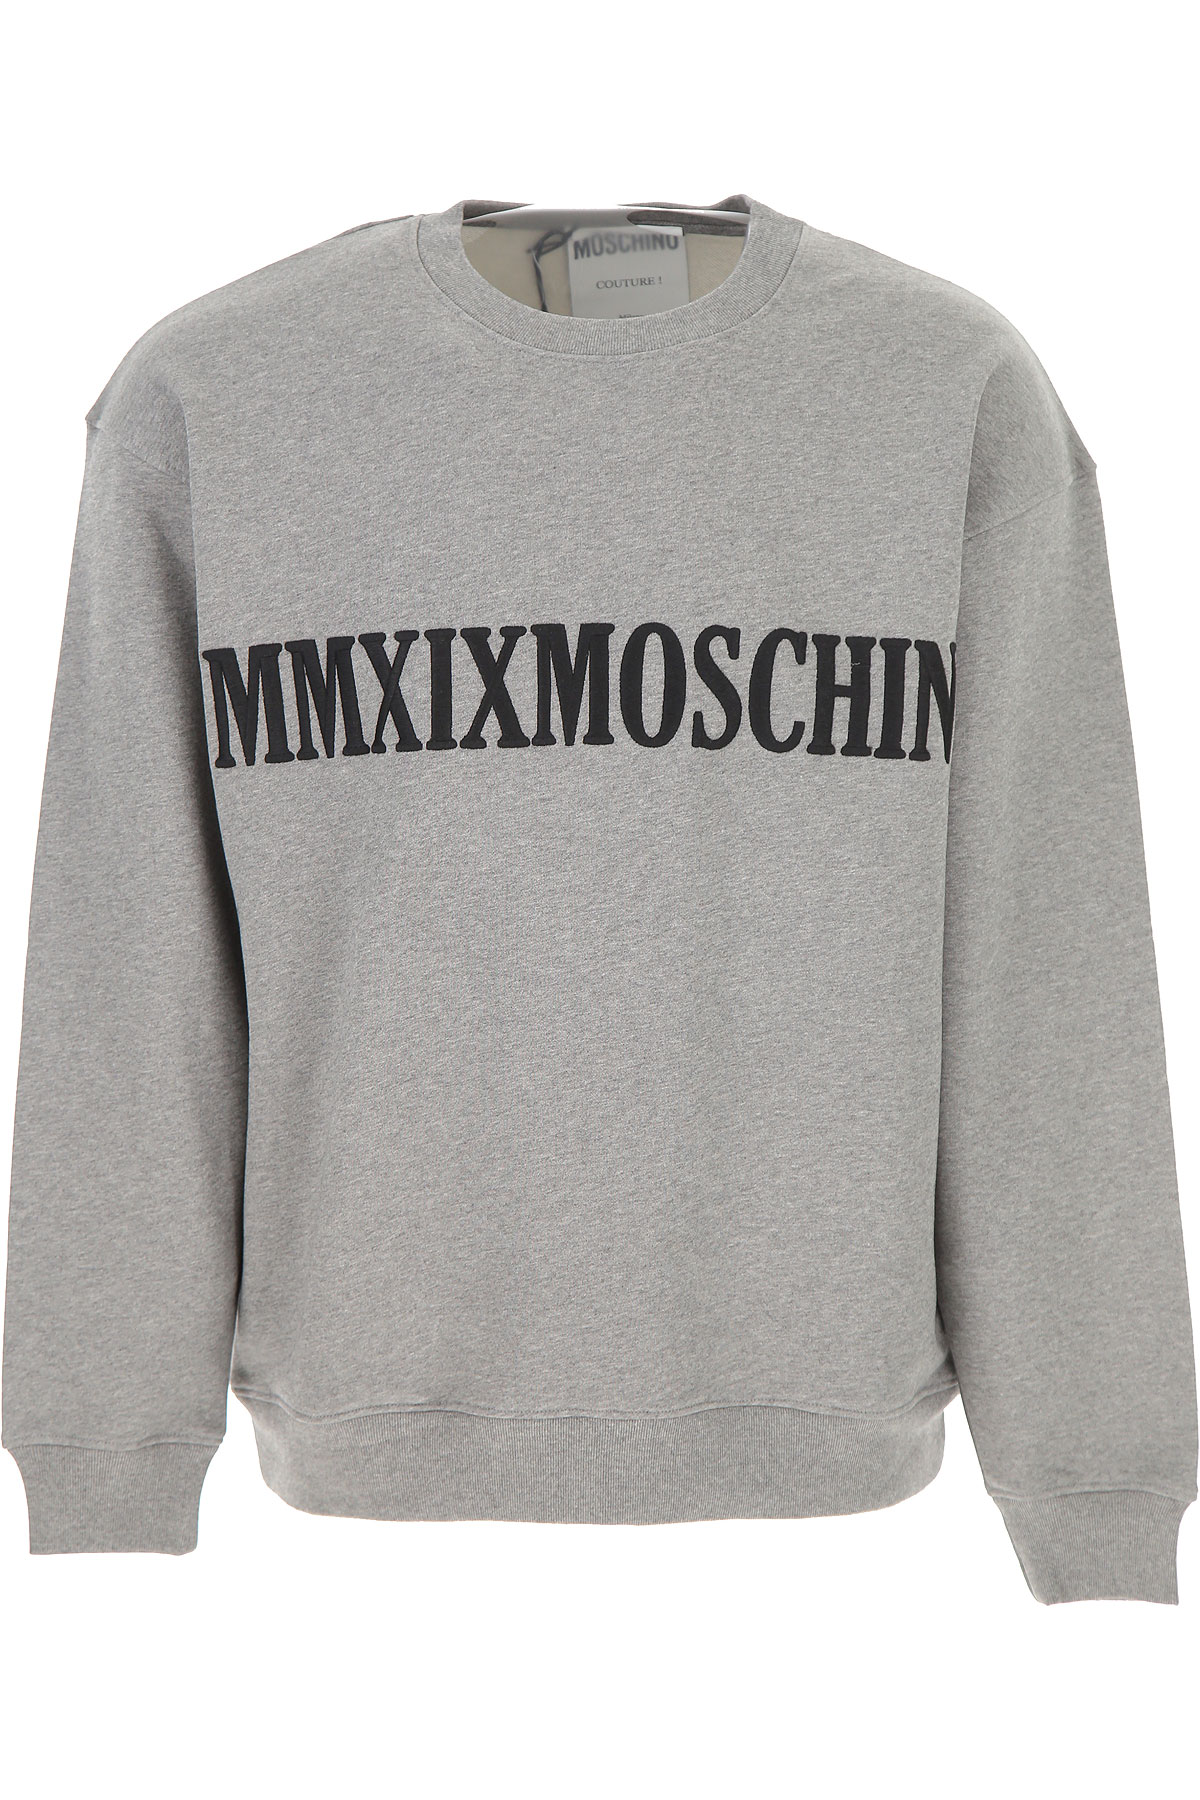 Moschino Sweatshirt für Herren, Kapuzenpulli, Hoodie, Sweats Günstig im Sale, Grau, Baumwolle, 2017, L S XL XXL